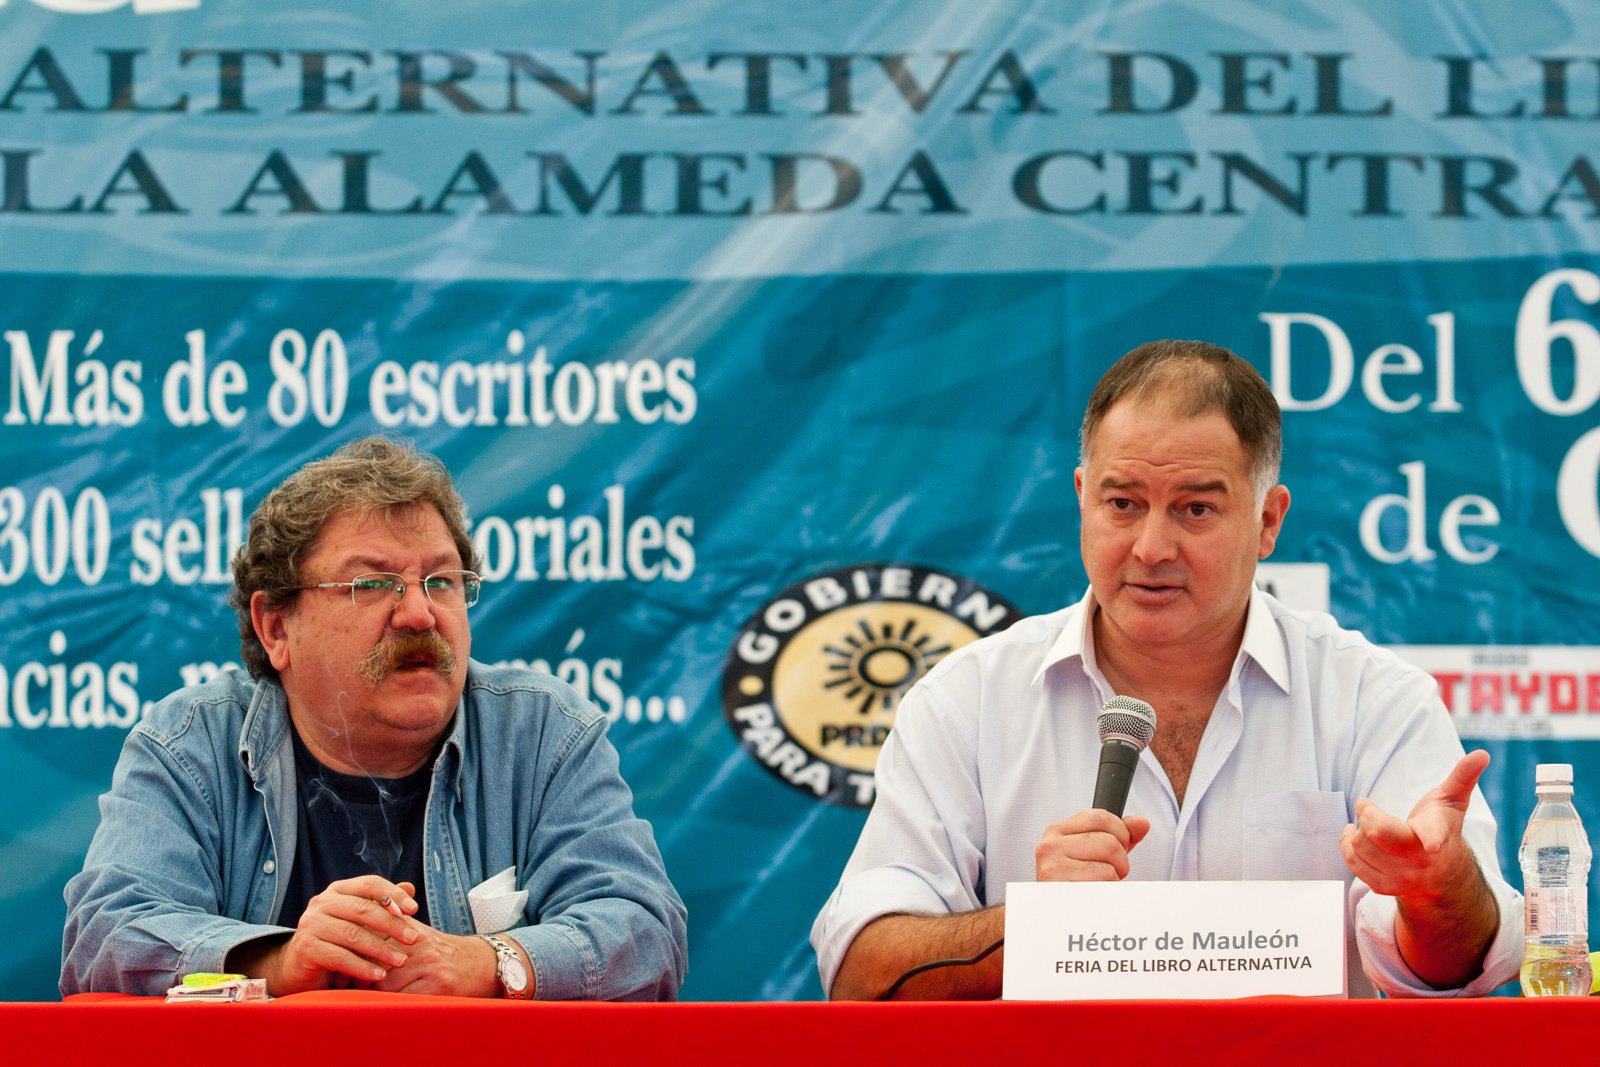 CNDH externa su preocupación por amenazas contra Héctor de Mauleón